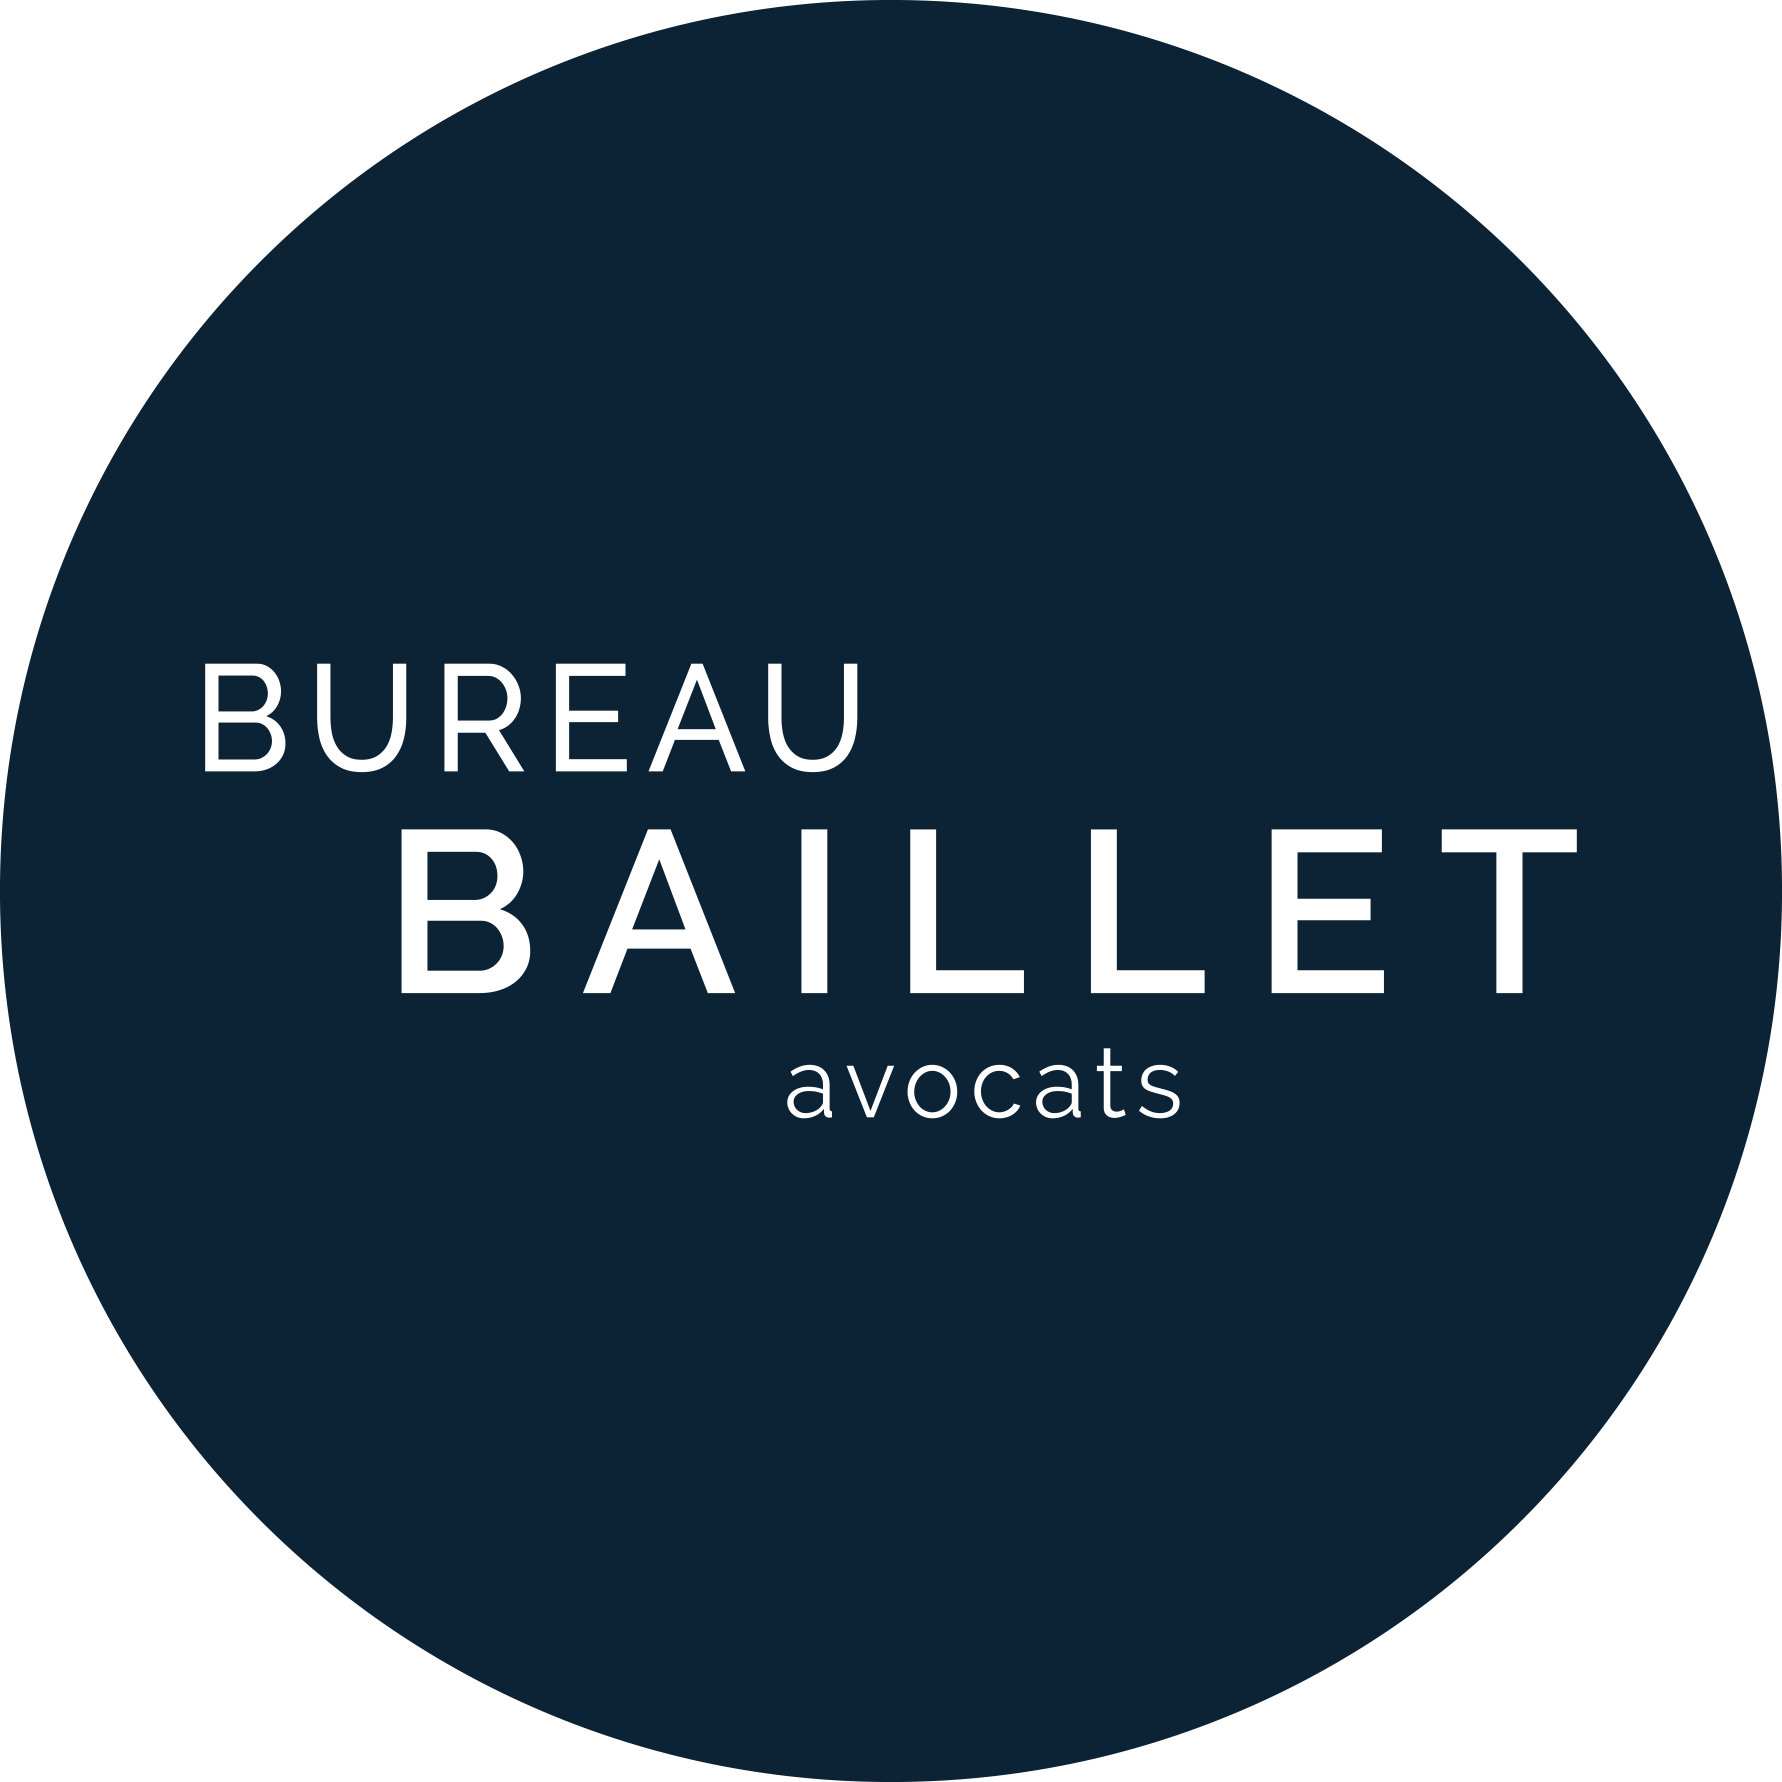 Bureau Baillet